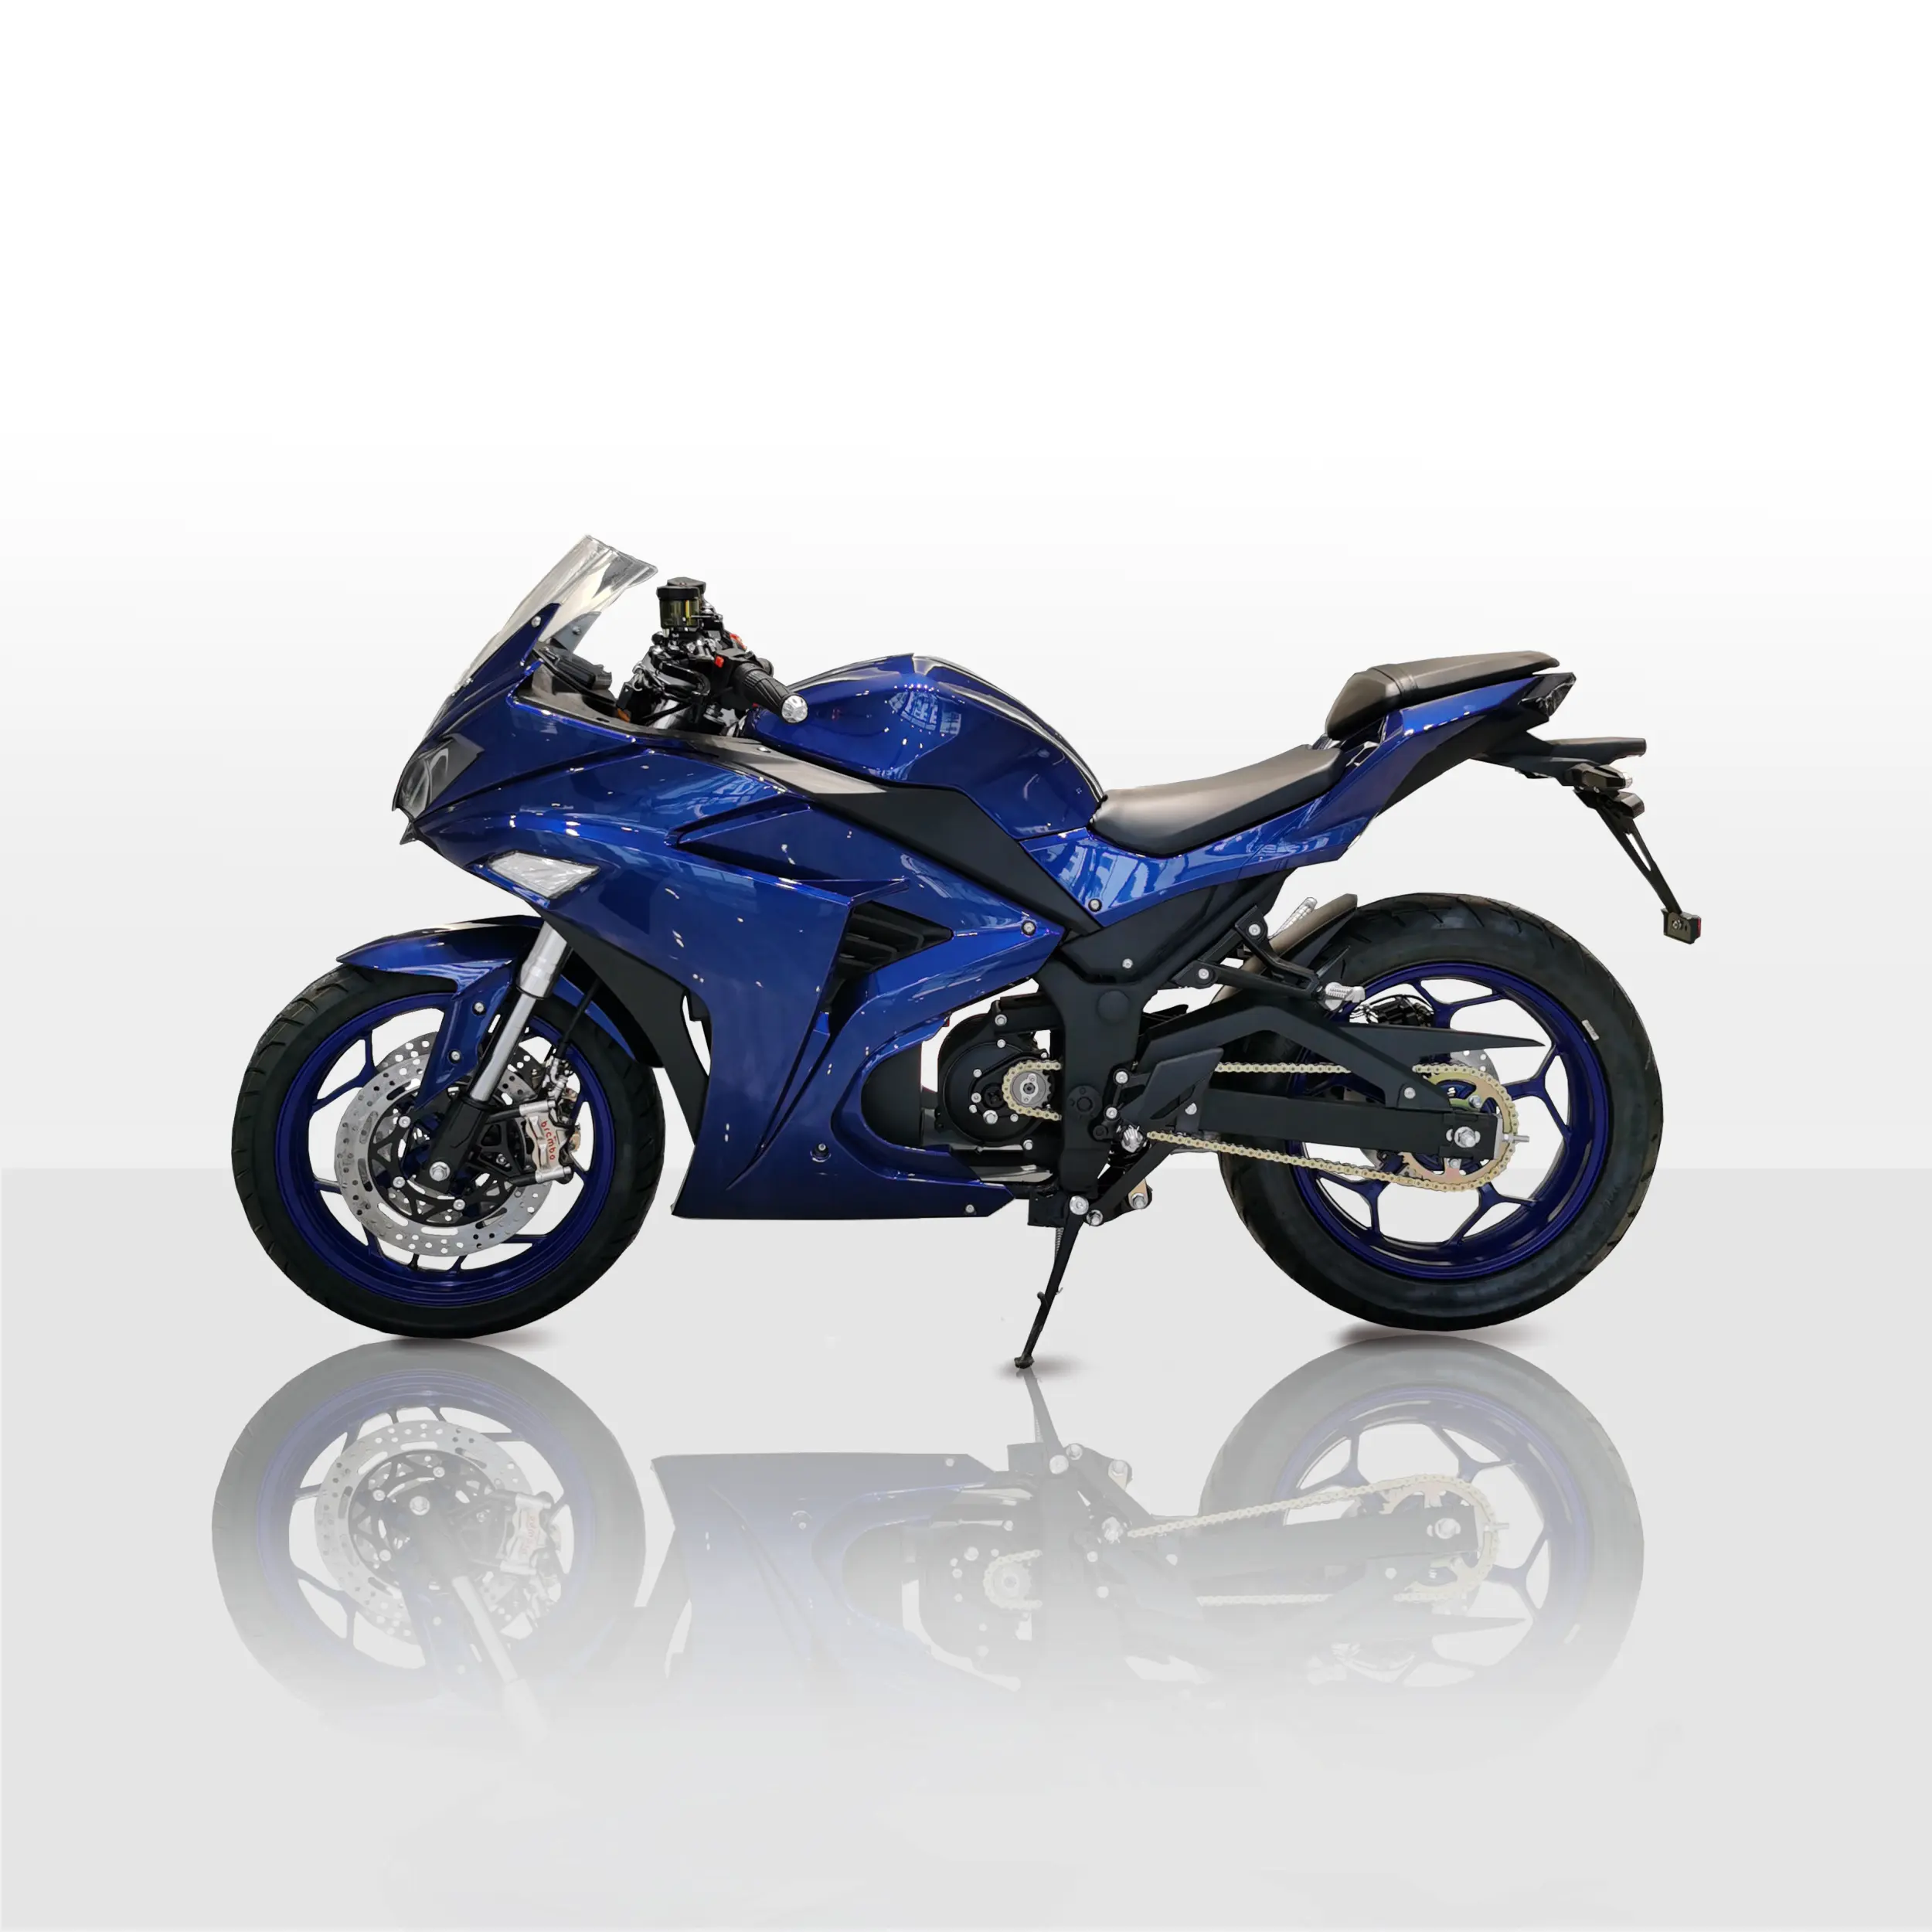 دراجة نارية كهربائية من Fast-Class بمحرك سلسلة قوي يعمل بمحرك متوسط بقوة 4000 واط مزودة ببطارية ليثيوم بقوة 72 فولت